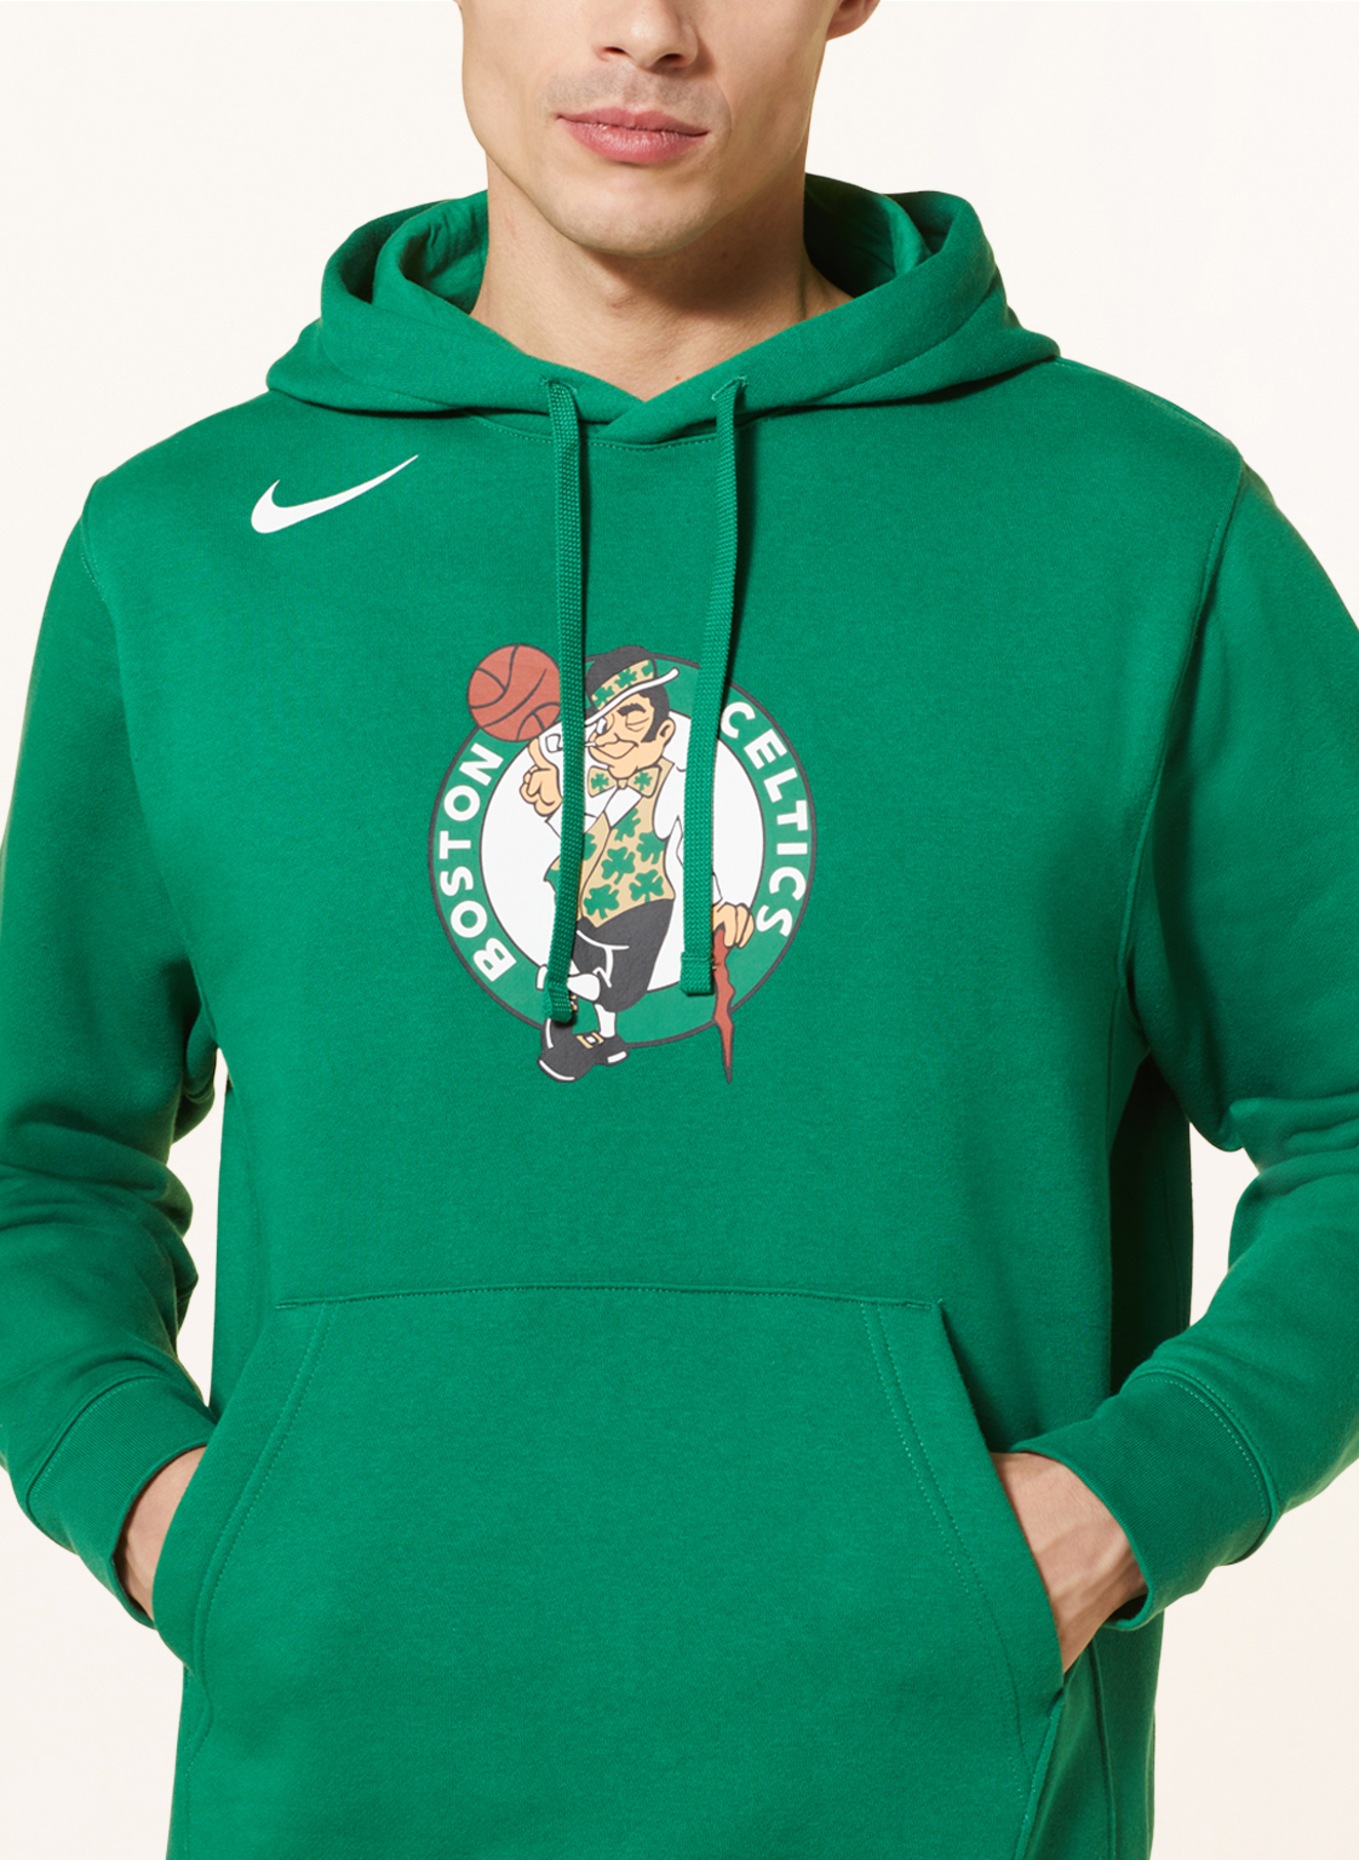 Tommy Hilfiger Mens Celtics Sweatshirt, Green, Medium